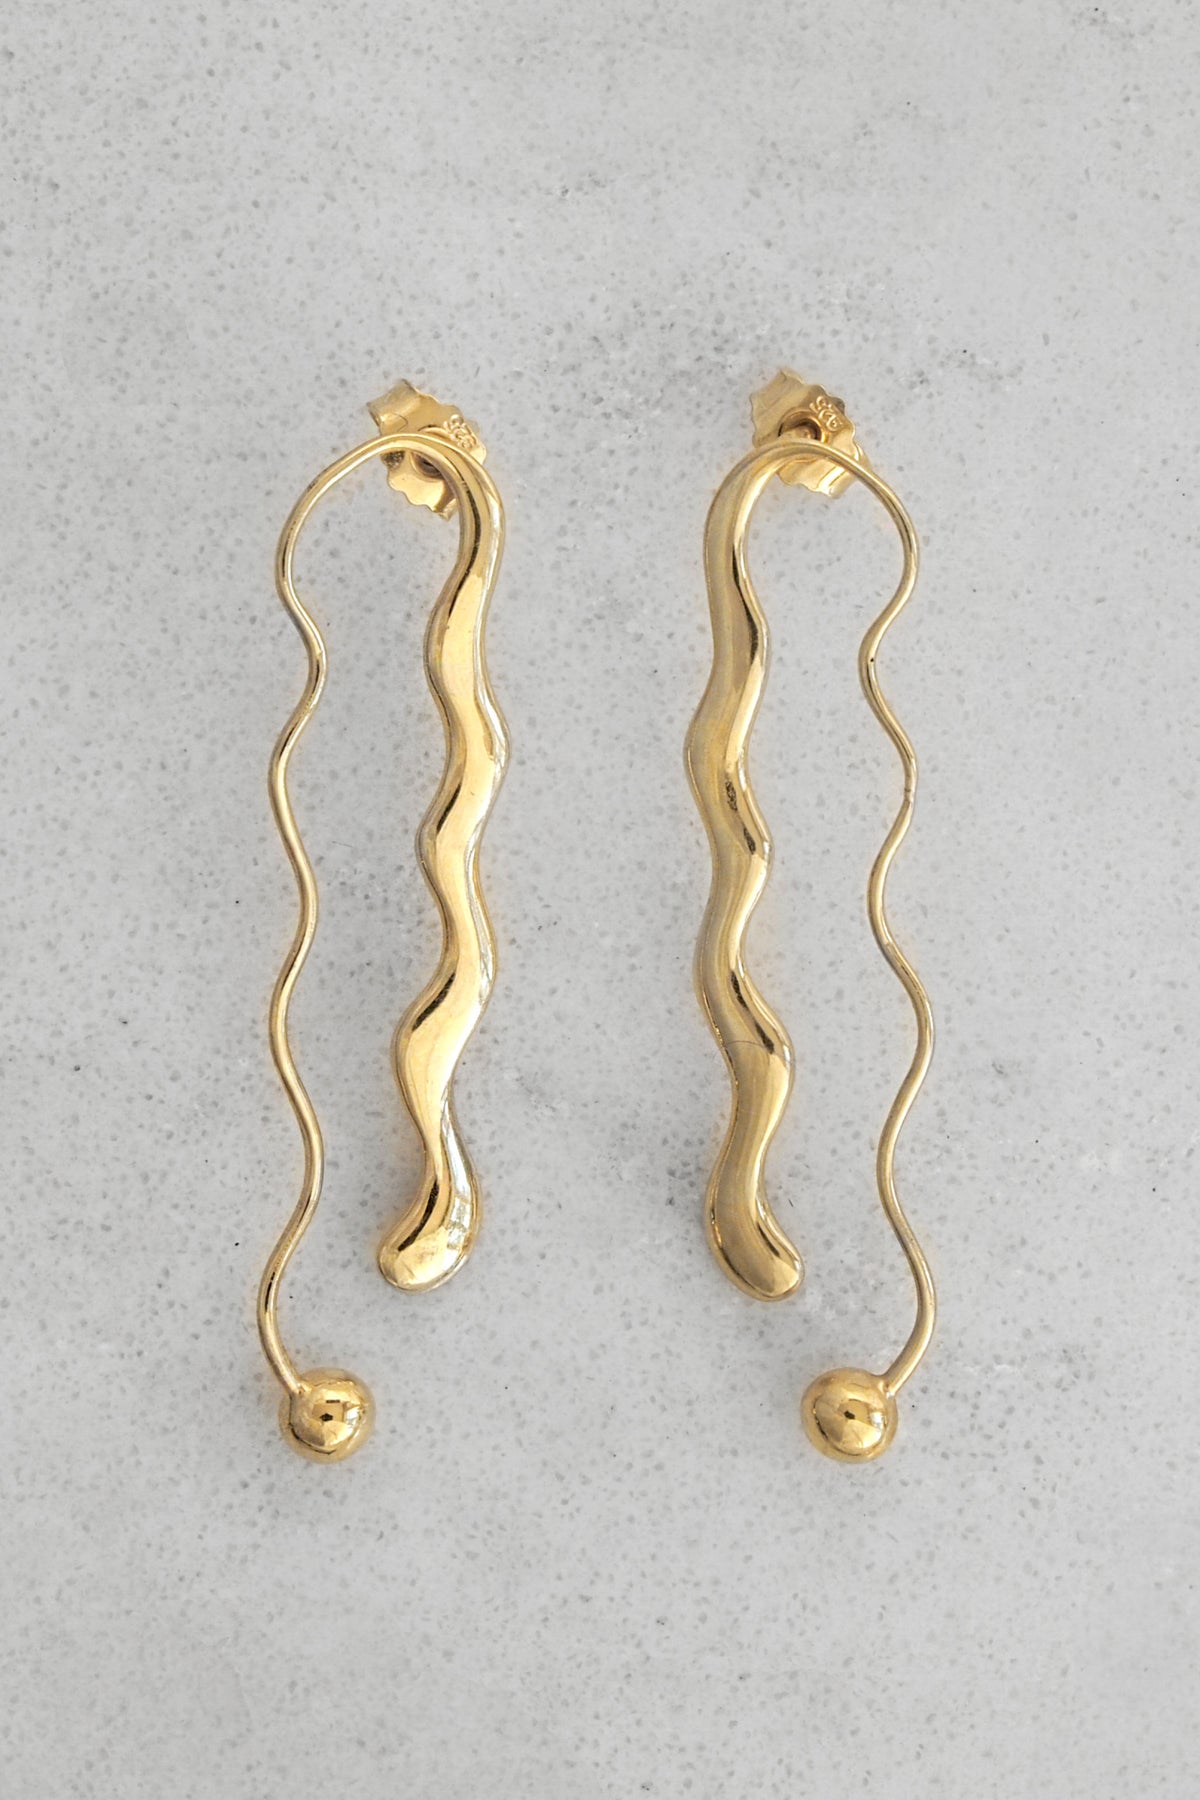 Jean Earrings in Gold